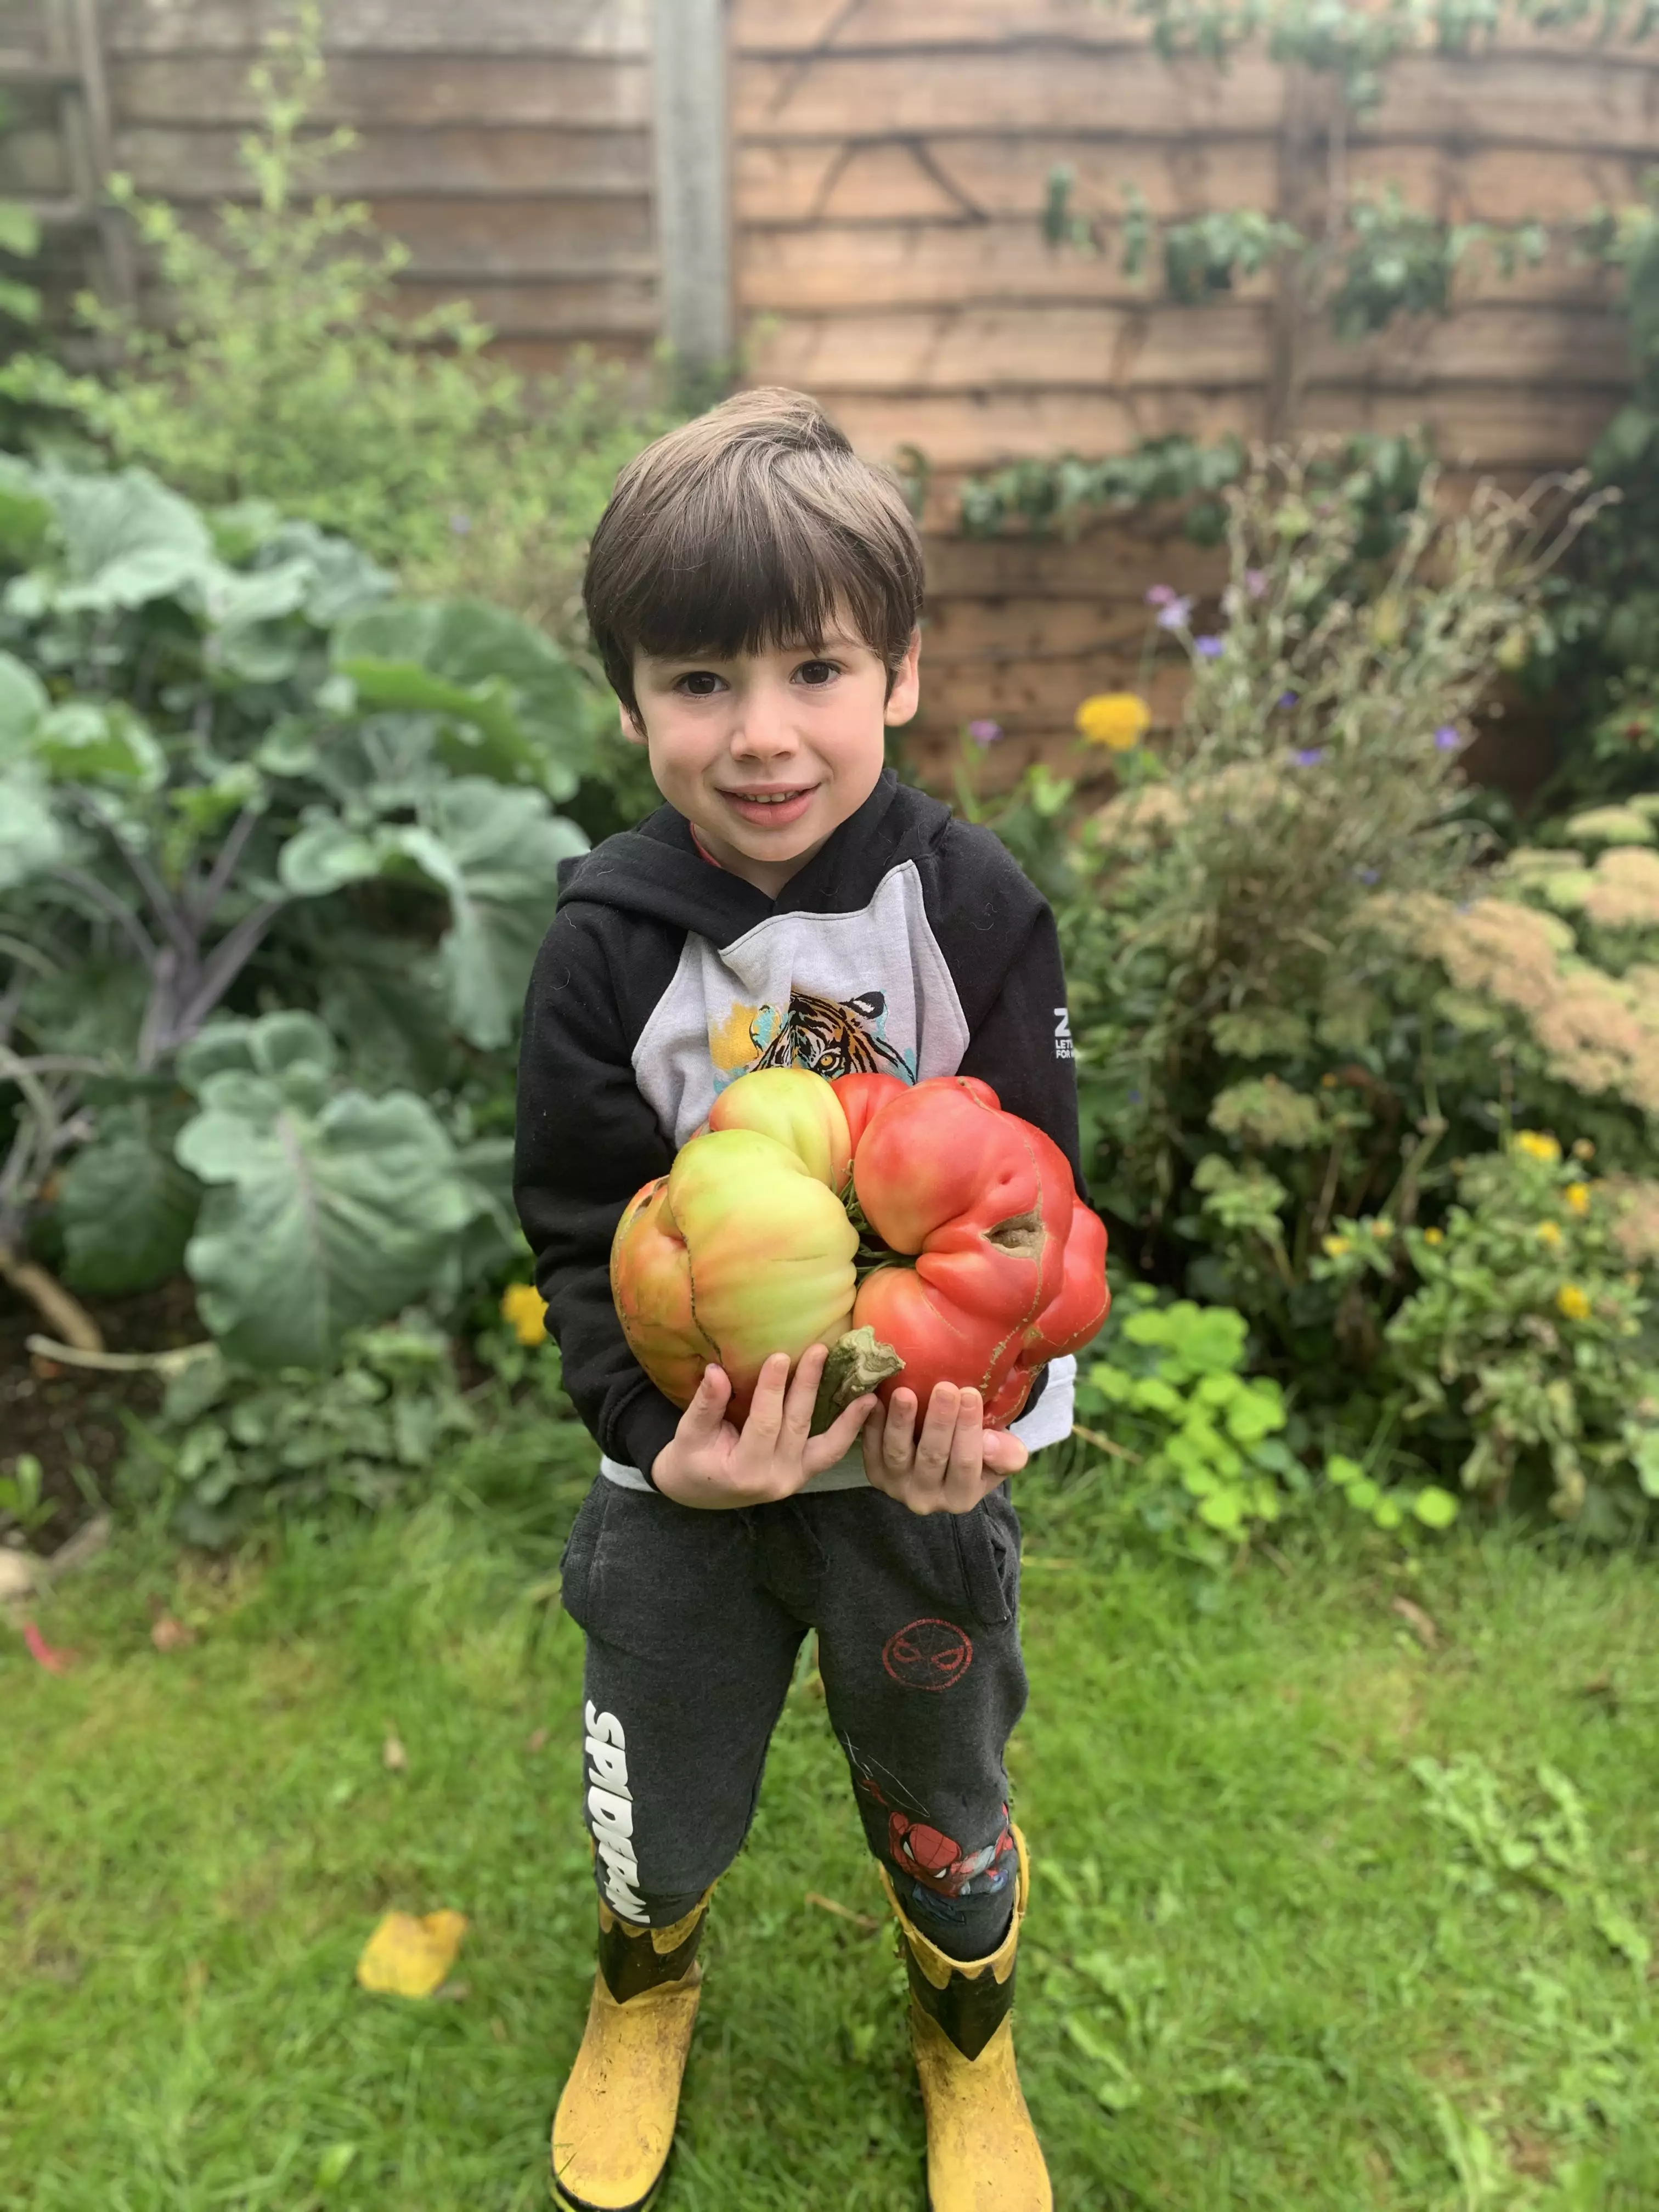 Douglas' son Stellan with the tomato.